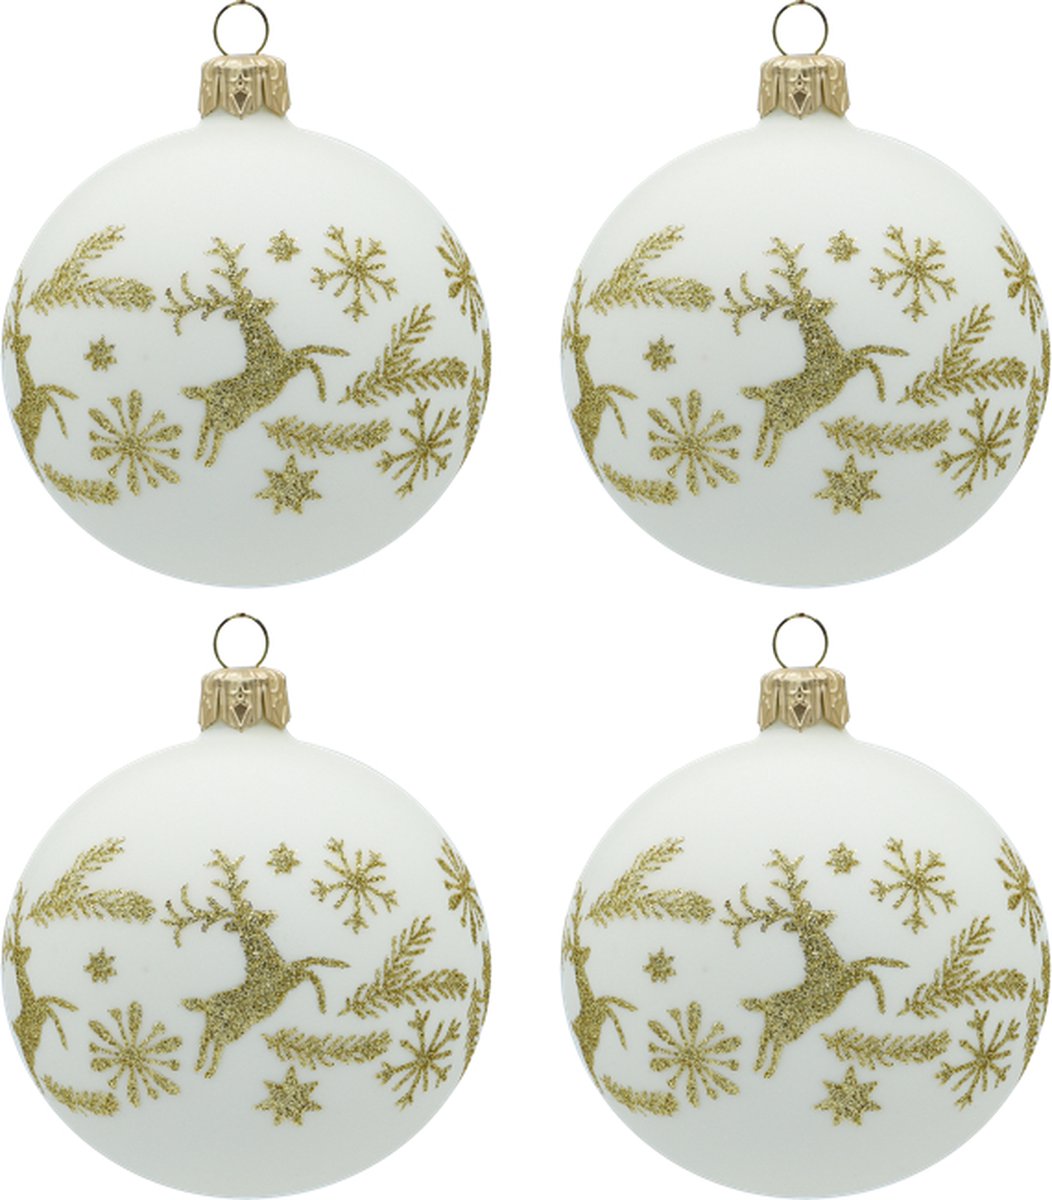 Feestelijke Witte Kerstballen met Goud Kerstpatroon met Hertjes, Sterren en Dennentakken - set van 4 glazen kerstballen van 8 cm